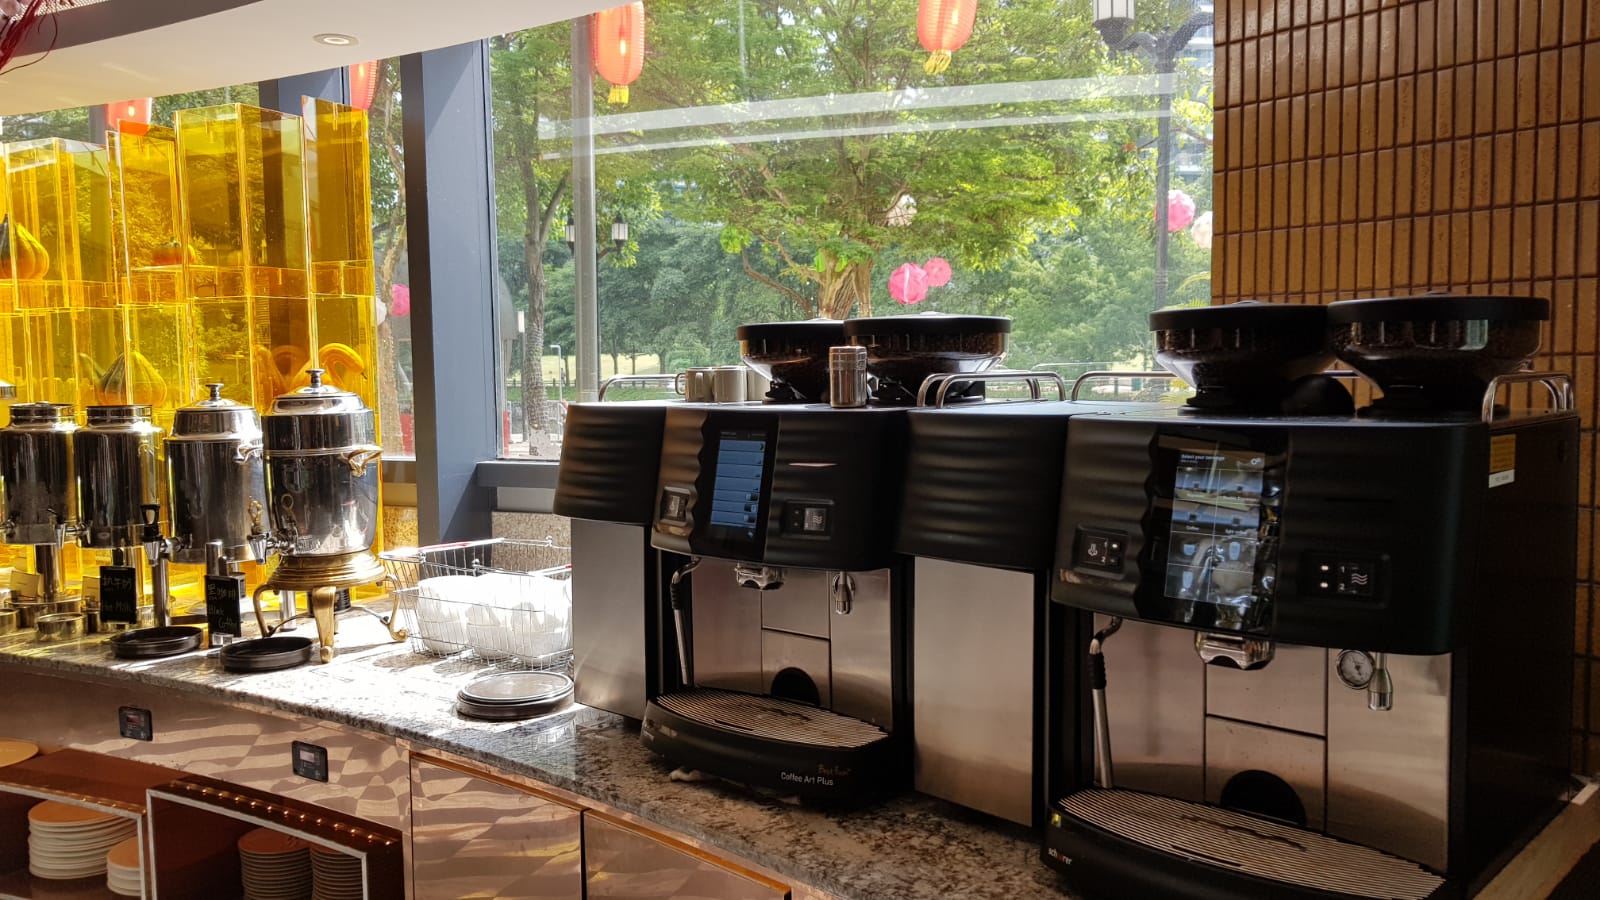 Keurig coffee machine in Asia